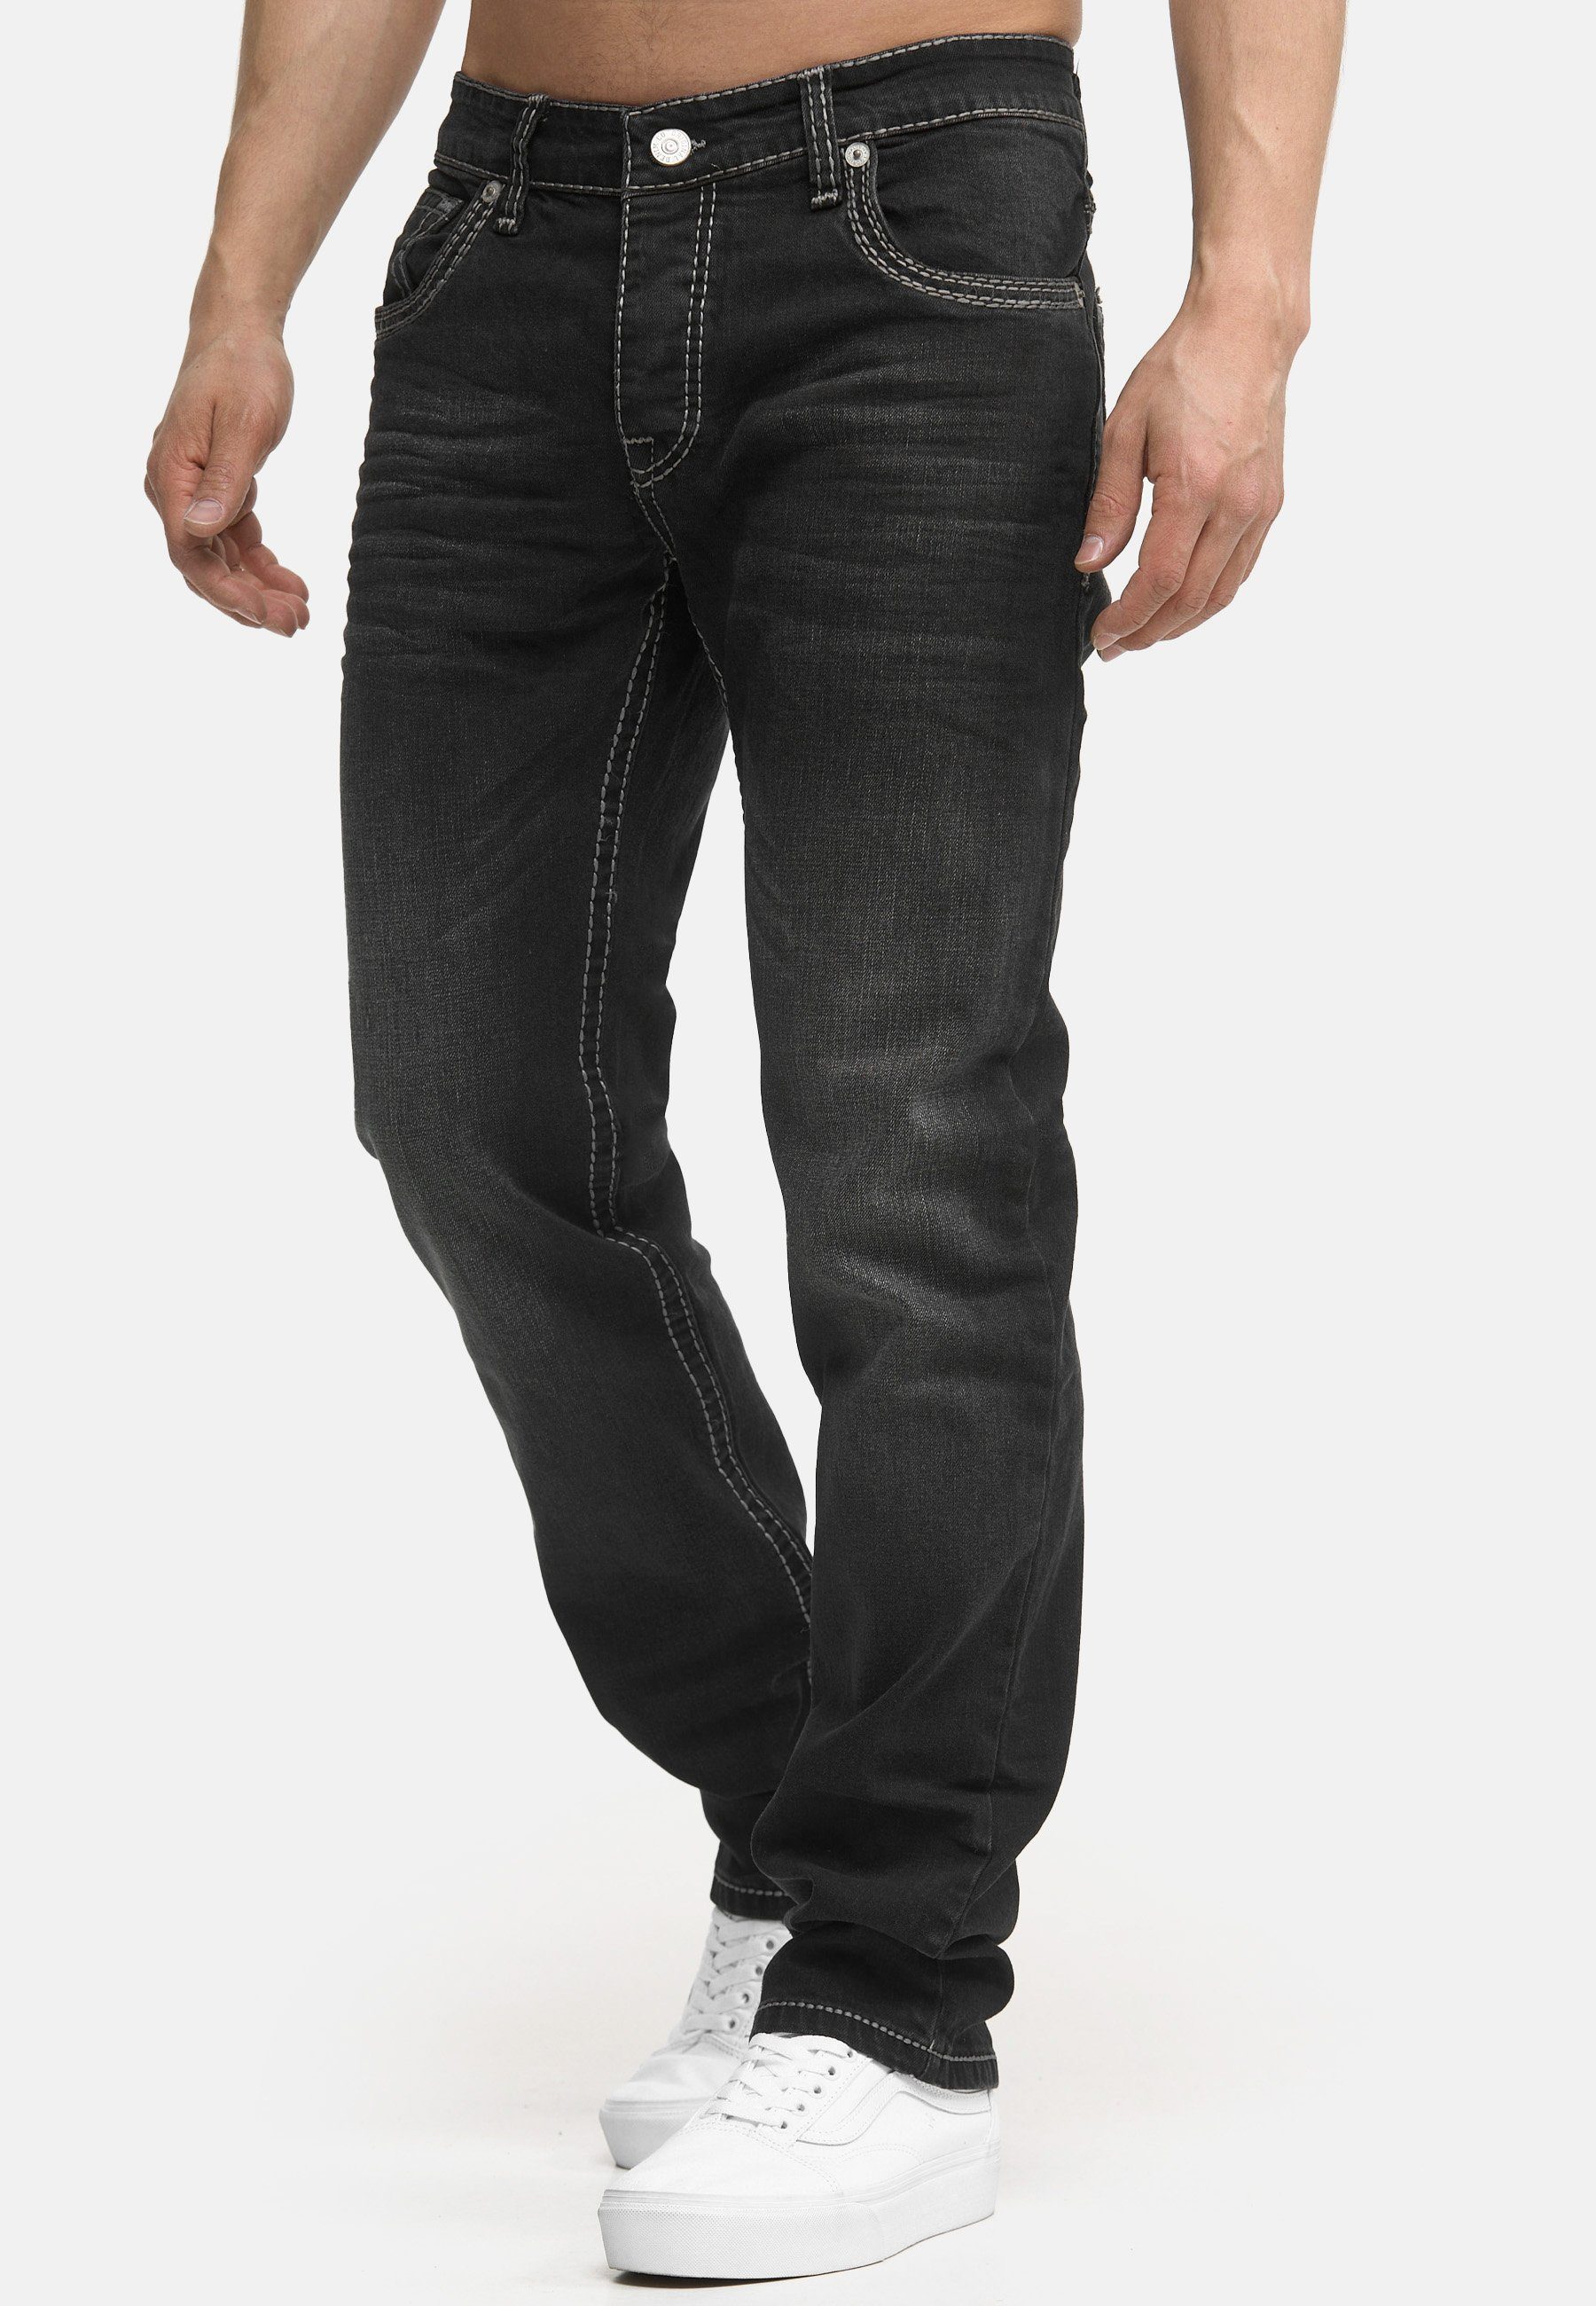 Männer Pocket Code47 Fit Regular Code47 Hose Regular-fit-Jeans light Bootcut Jeans Herren 902 black Denim Five